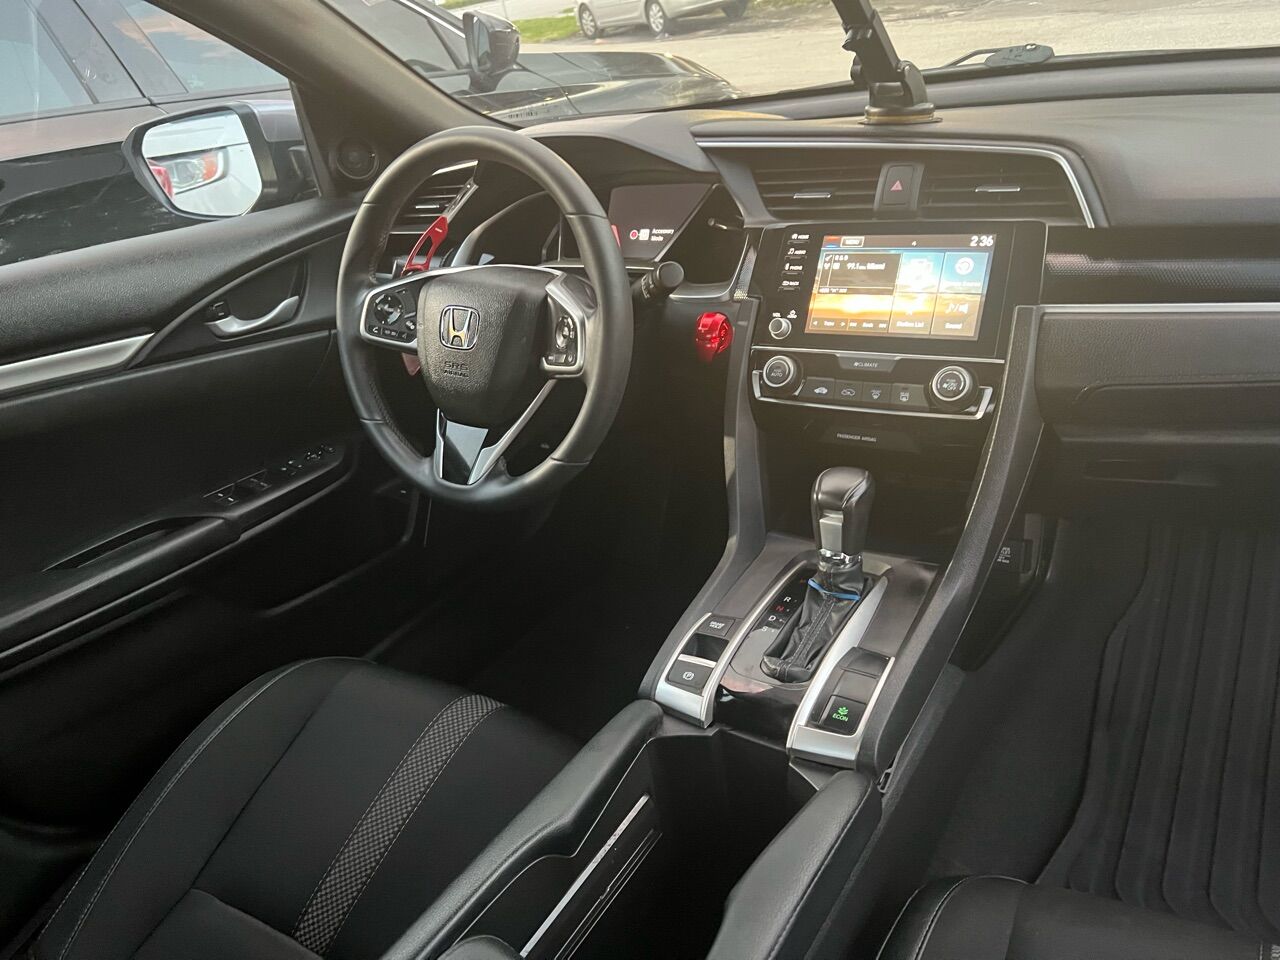 2020 HONDA Civic Sedan - $18,800